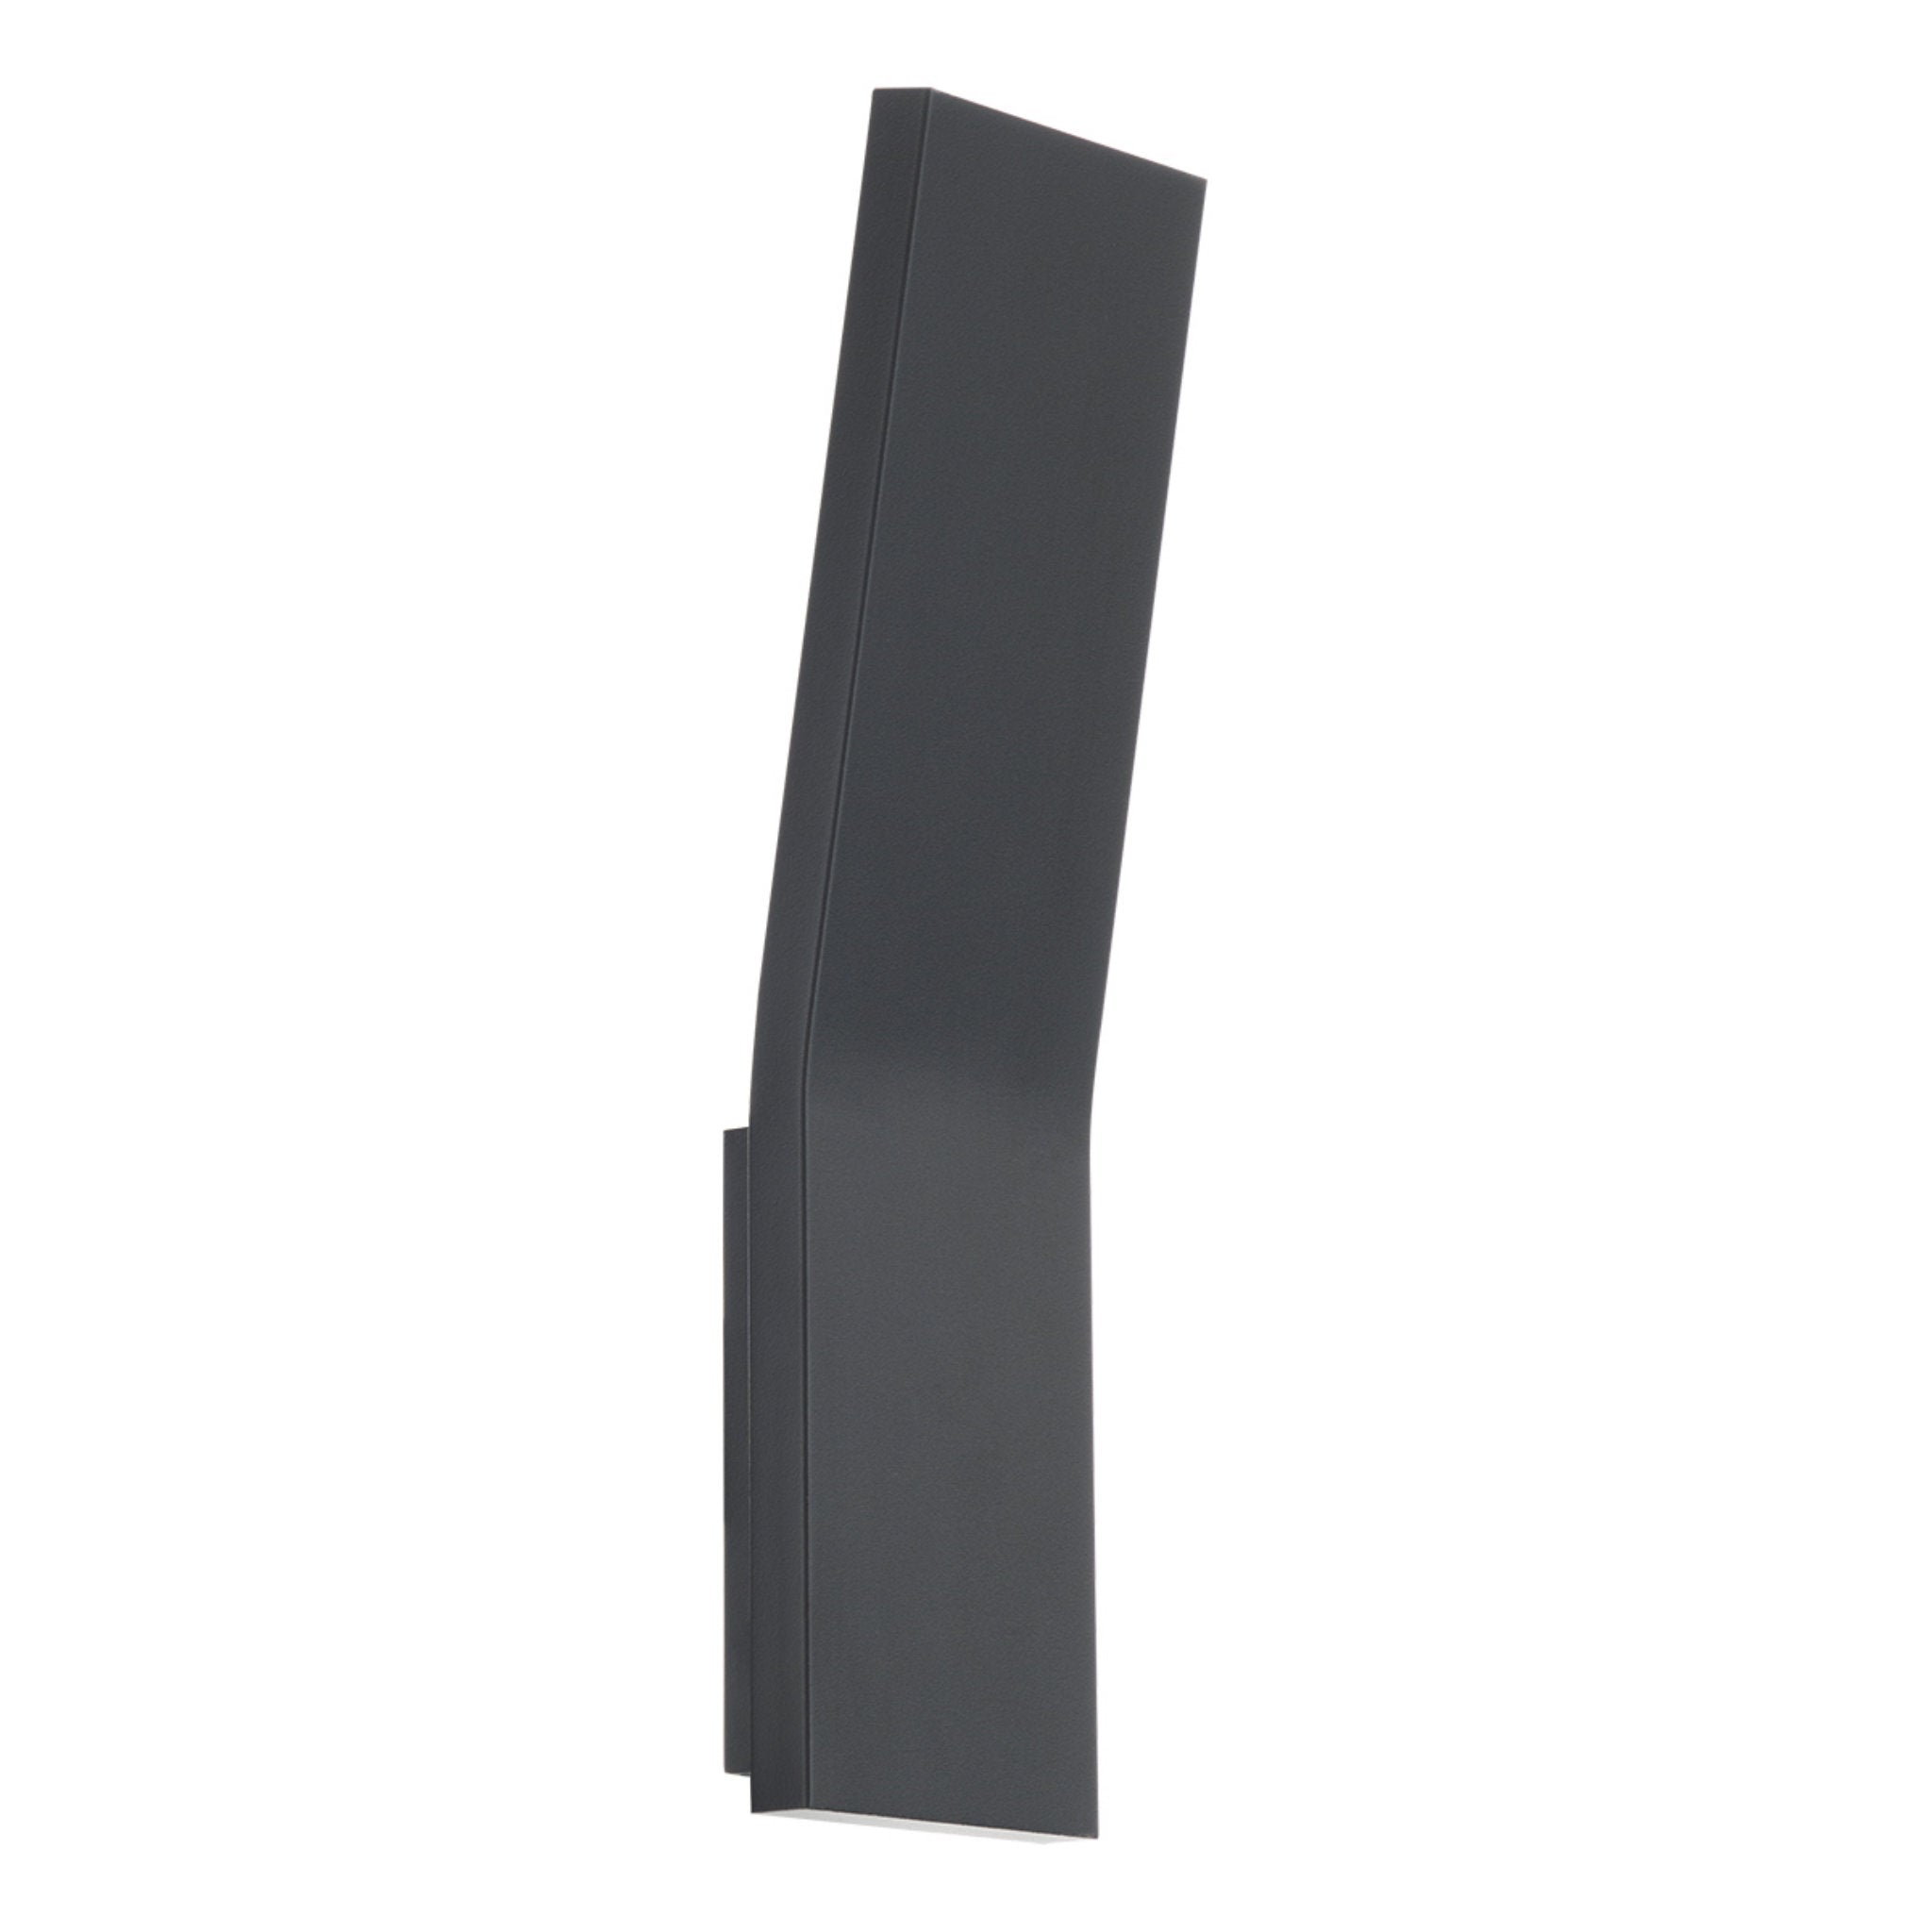 Modern Forms WS-11511-BK 3000K 9.5 Watt Blade LED Wall Sconce in Black